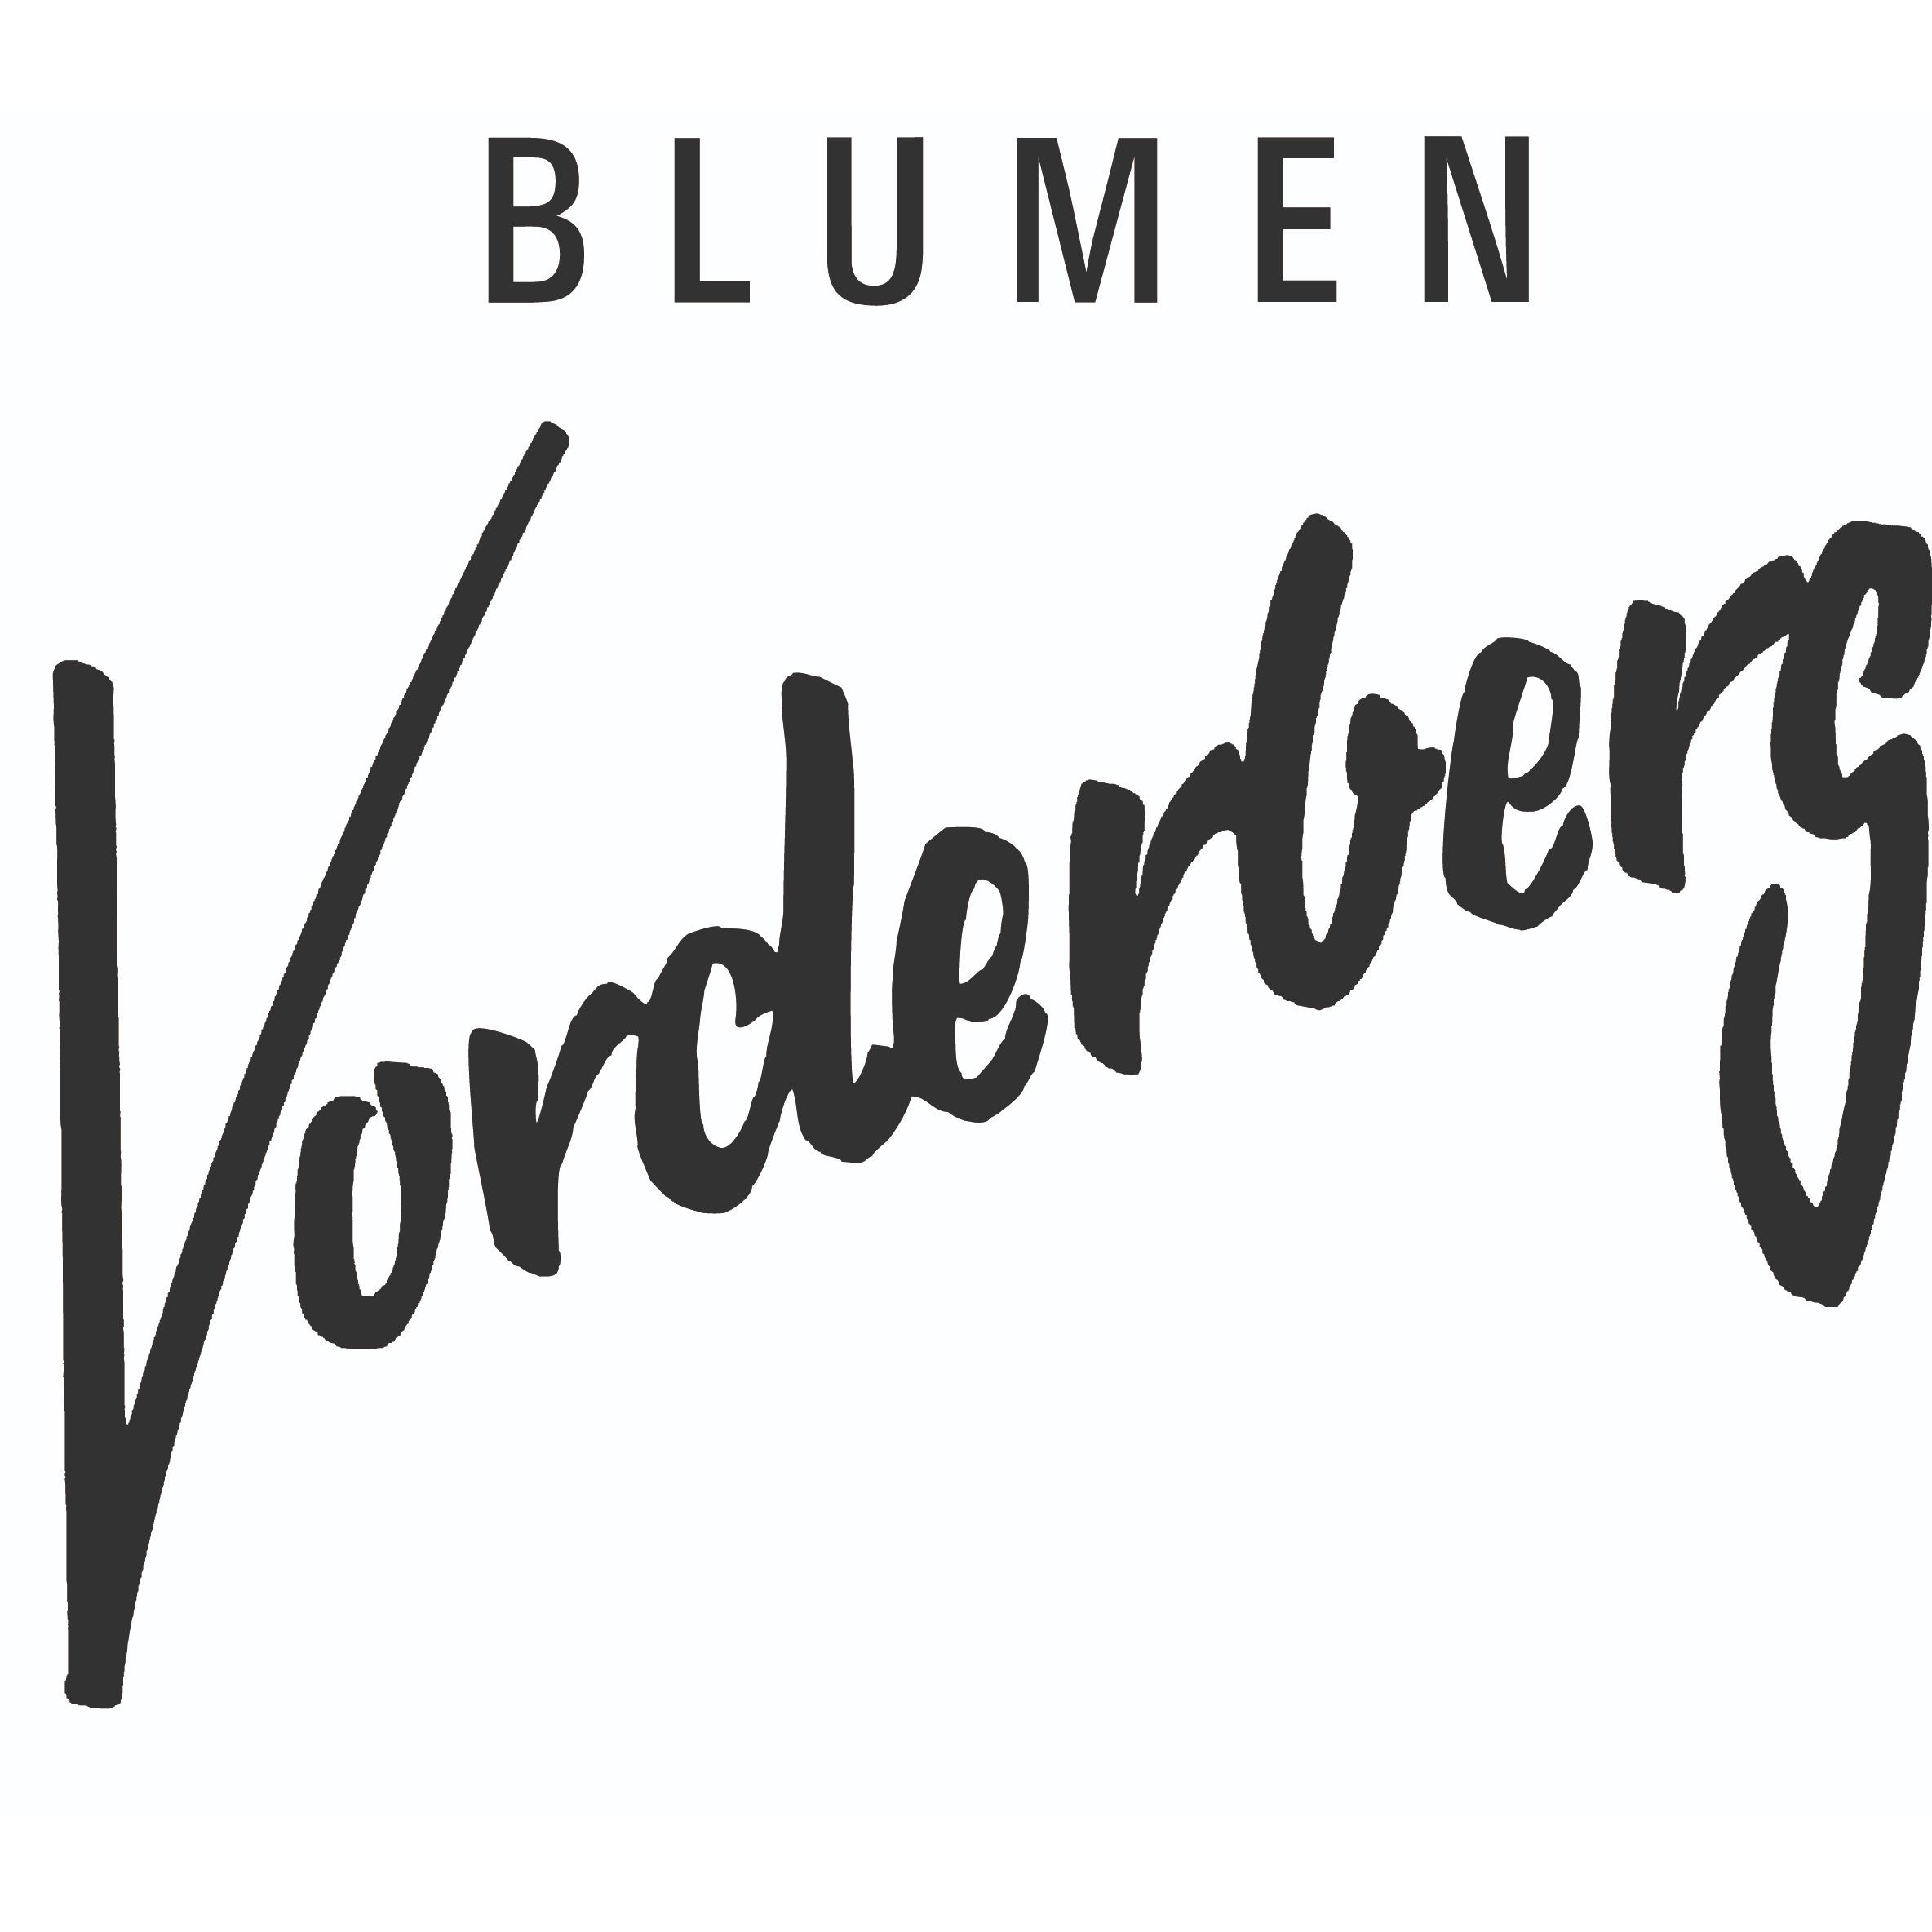 Blumen Vorderberg Logo